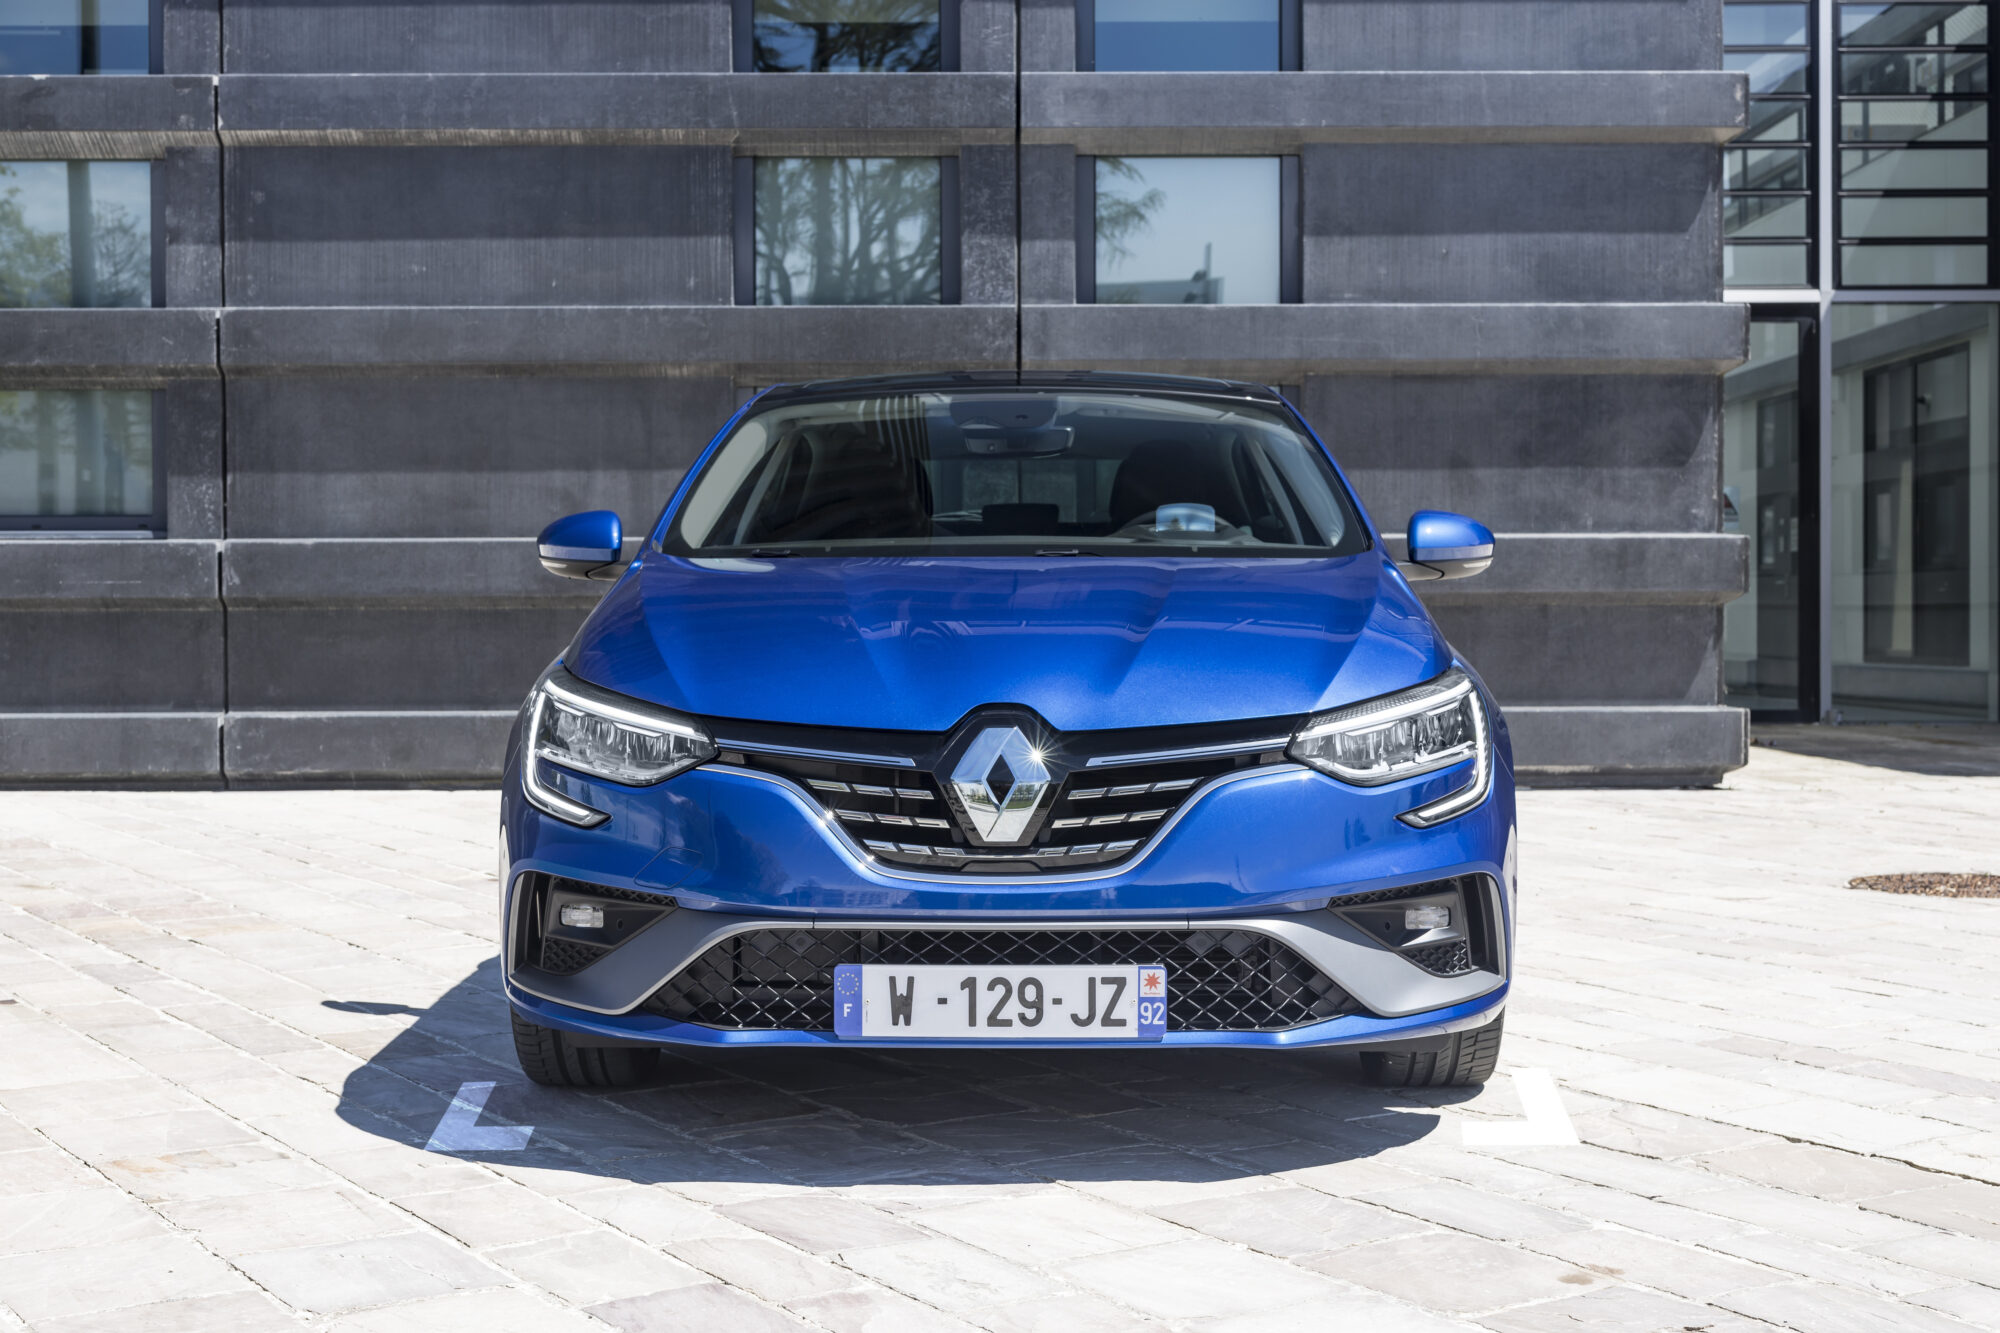 2021 - Essais presse Nouvelle Renault Mégane E-TECH Plug-in RS Line